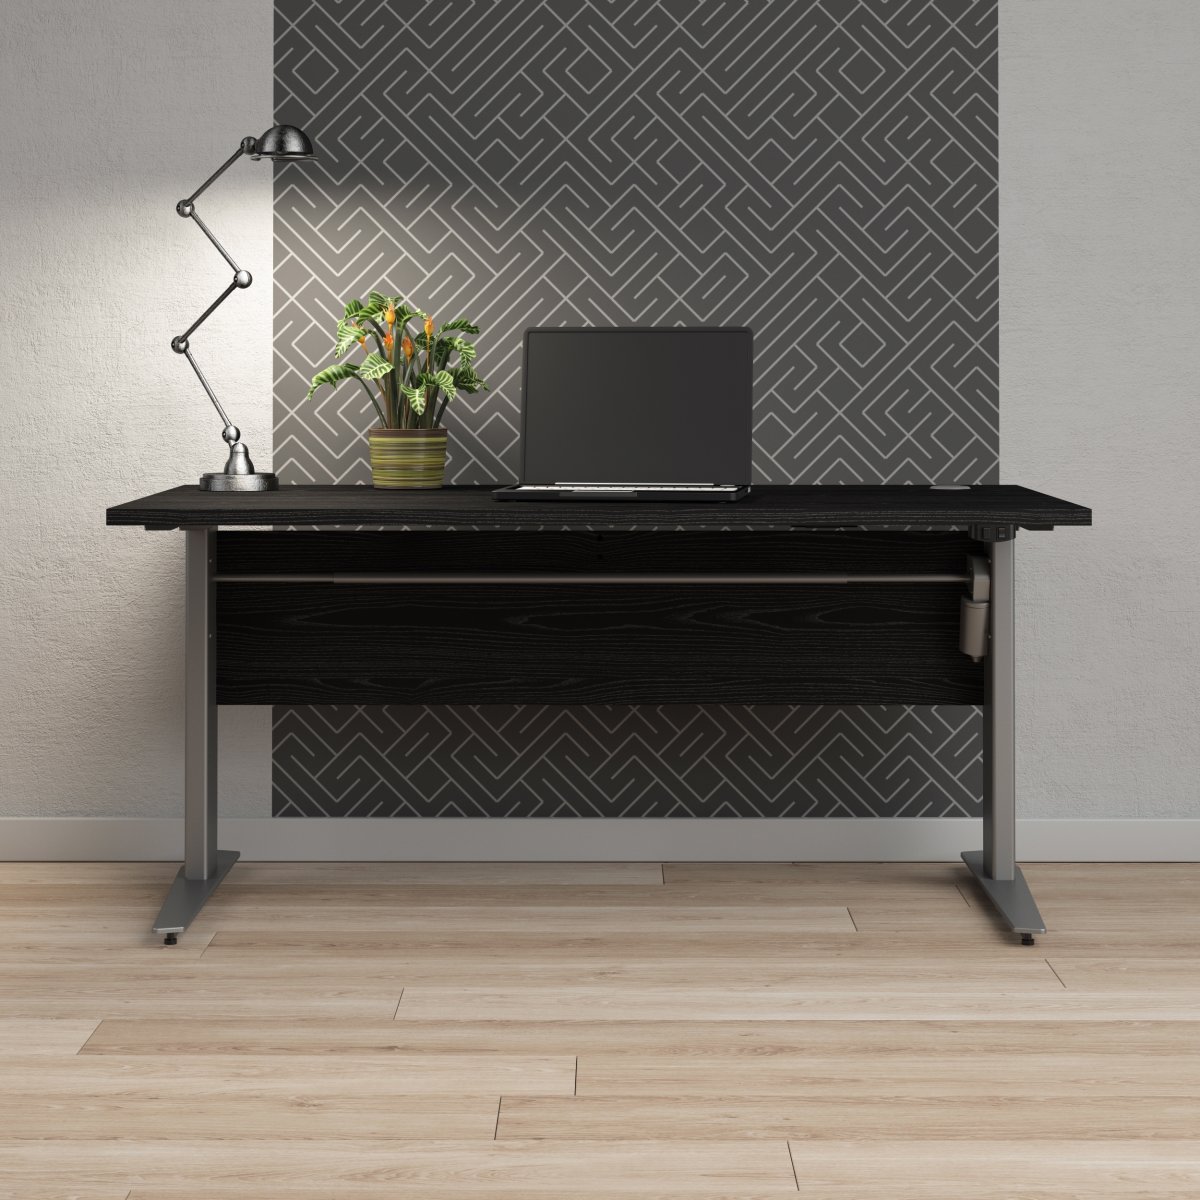 BudgetLine hæve/sænkebord, 150x80cm, sort/alu stel